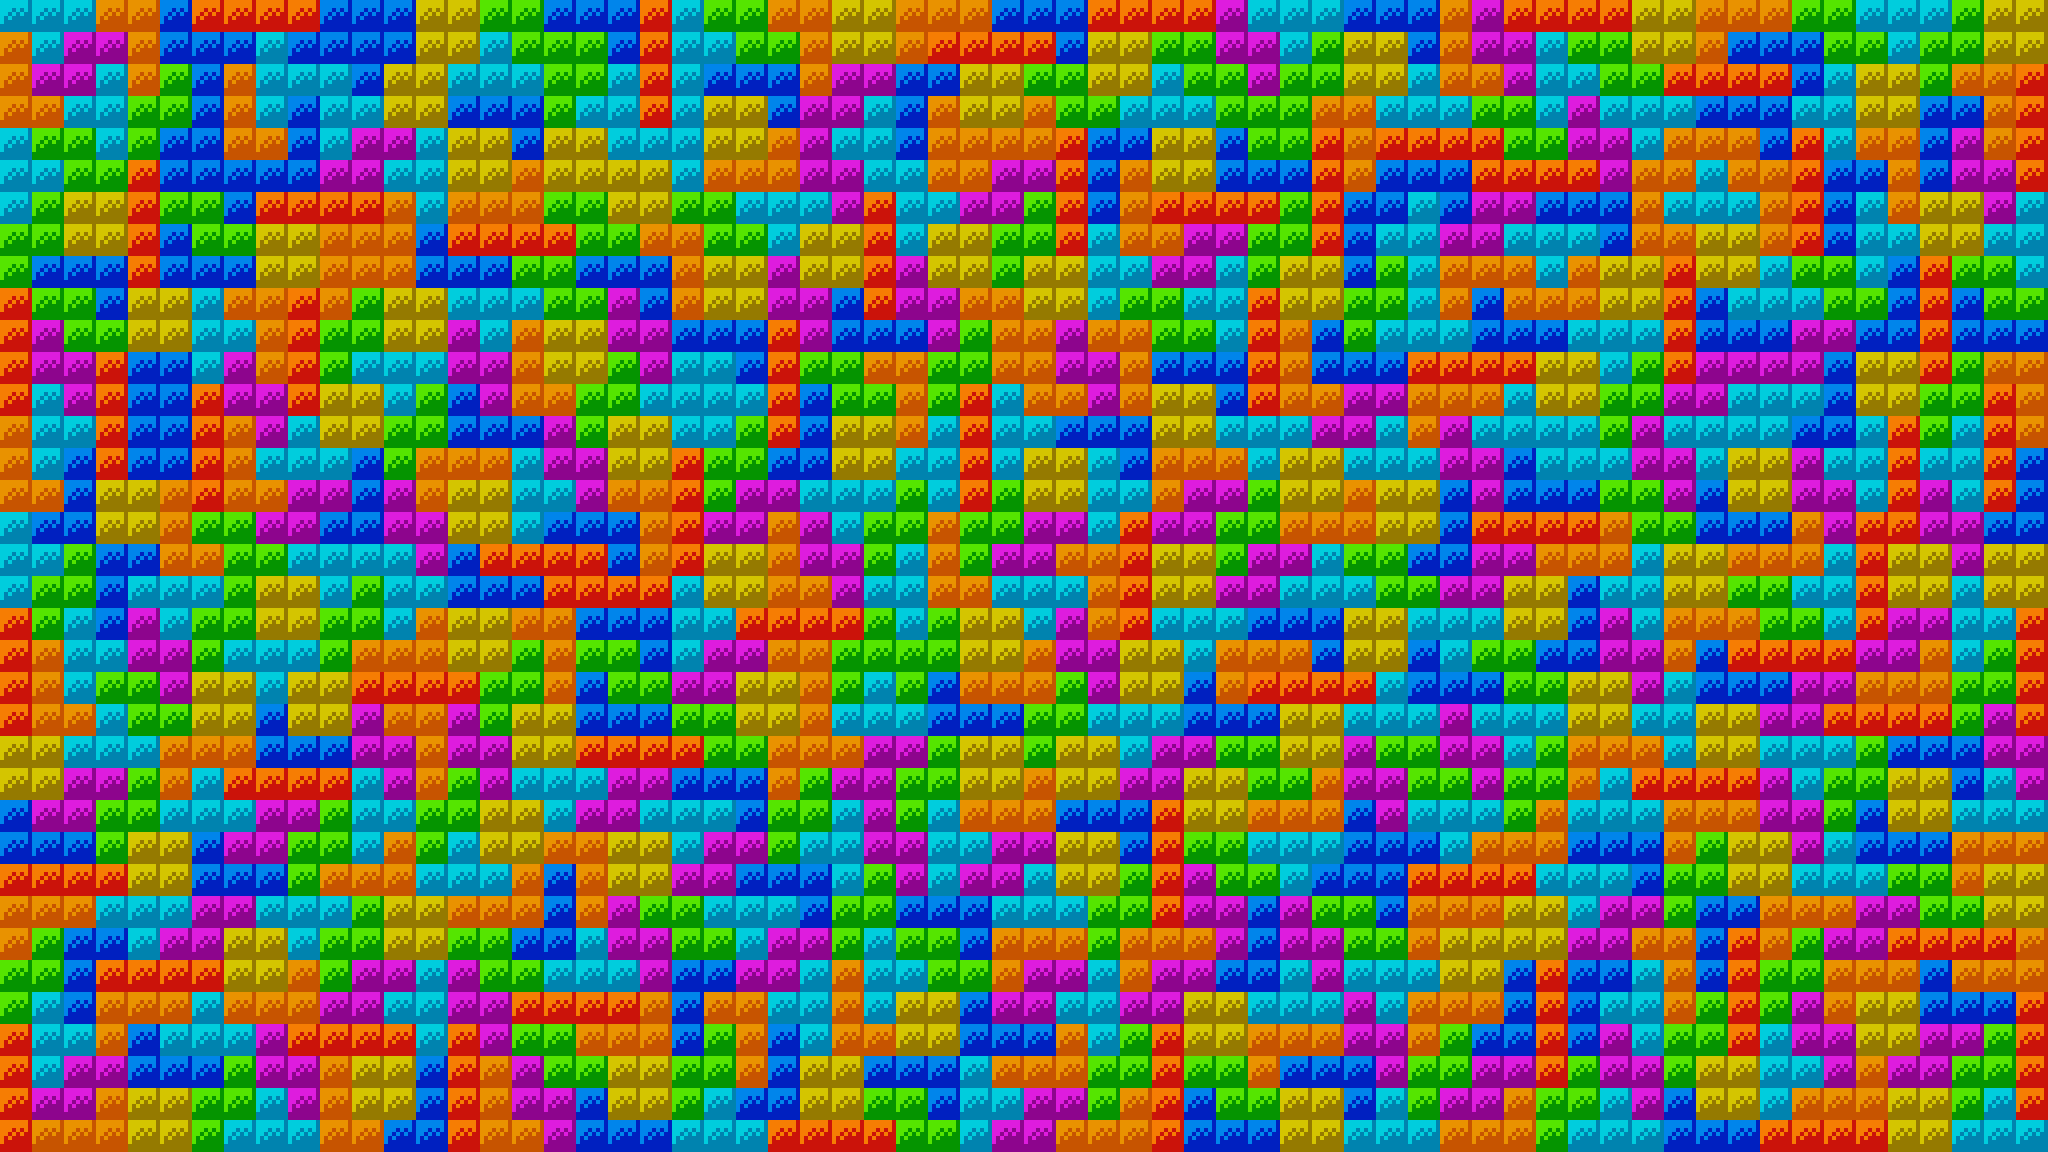 I made a Tetris desktop background using the TGM pieces